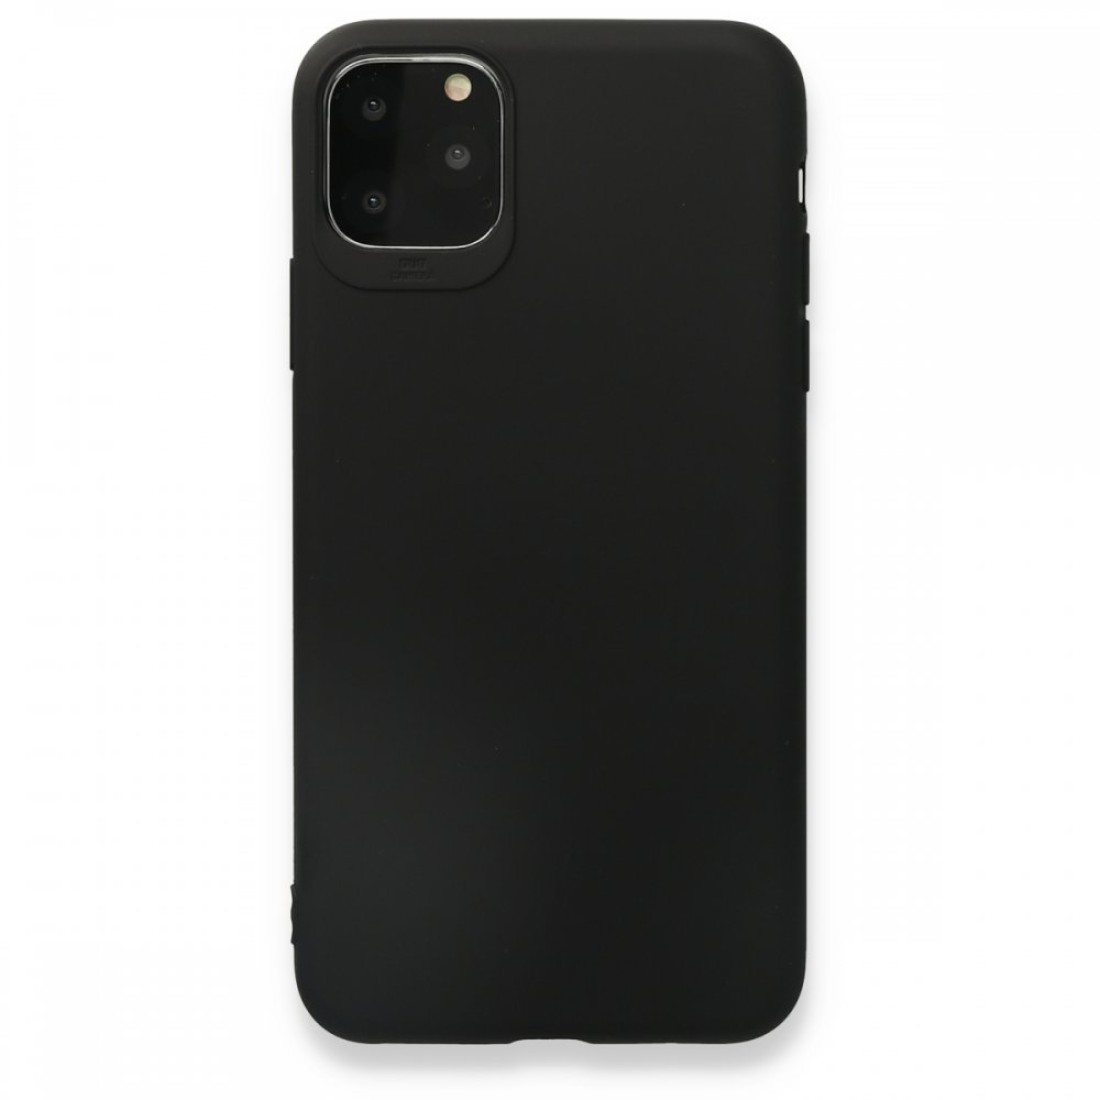 Apple iPhone 11 Pro Kılıf Premium Rubber Silikon - Siyah